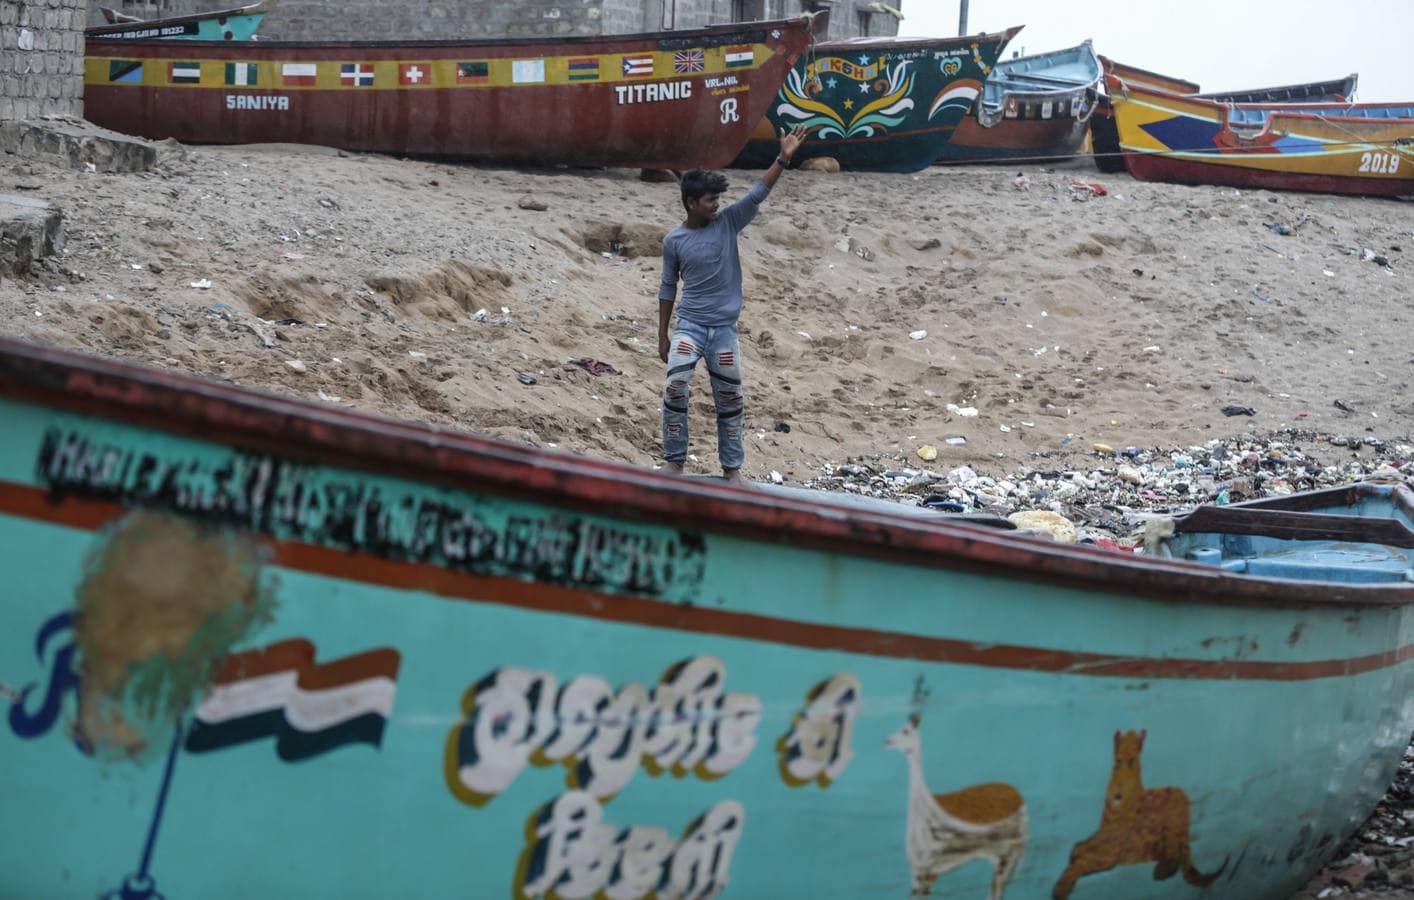 Los pescadores se preparan sacando los botes del mar arábigo ante la pronta llegada del ciclón Vayu a Veraval (india)